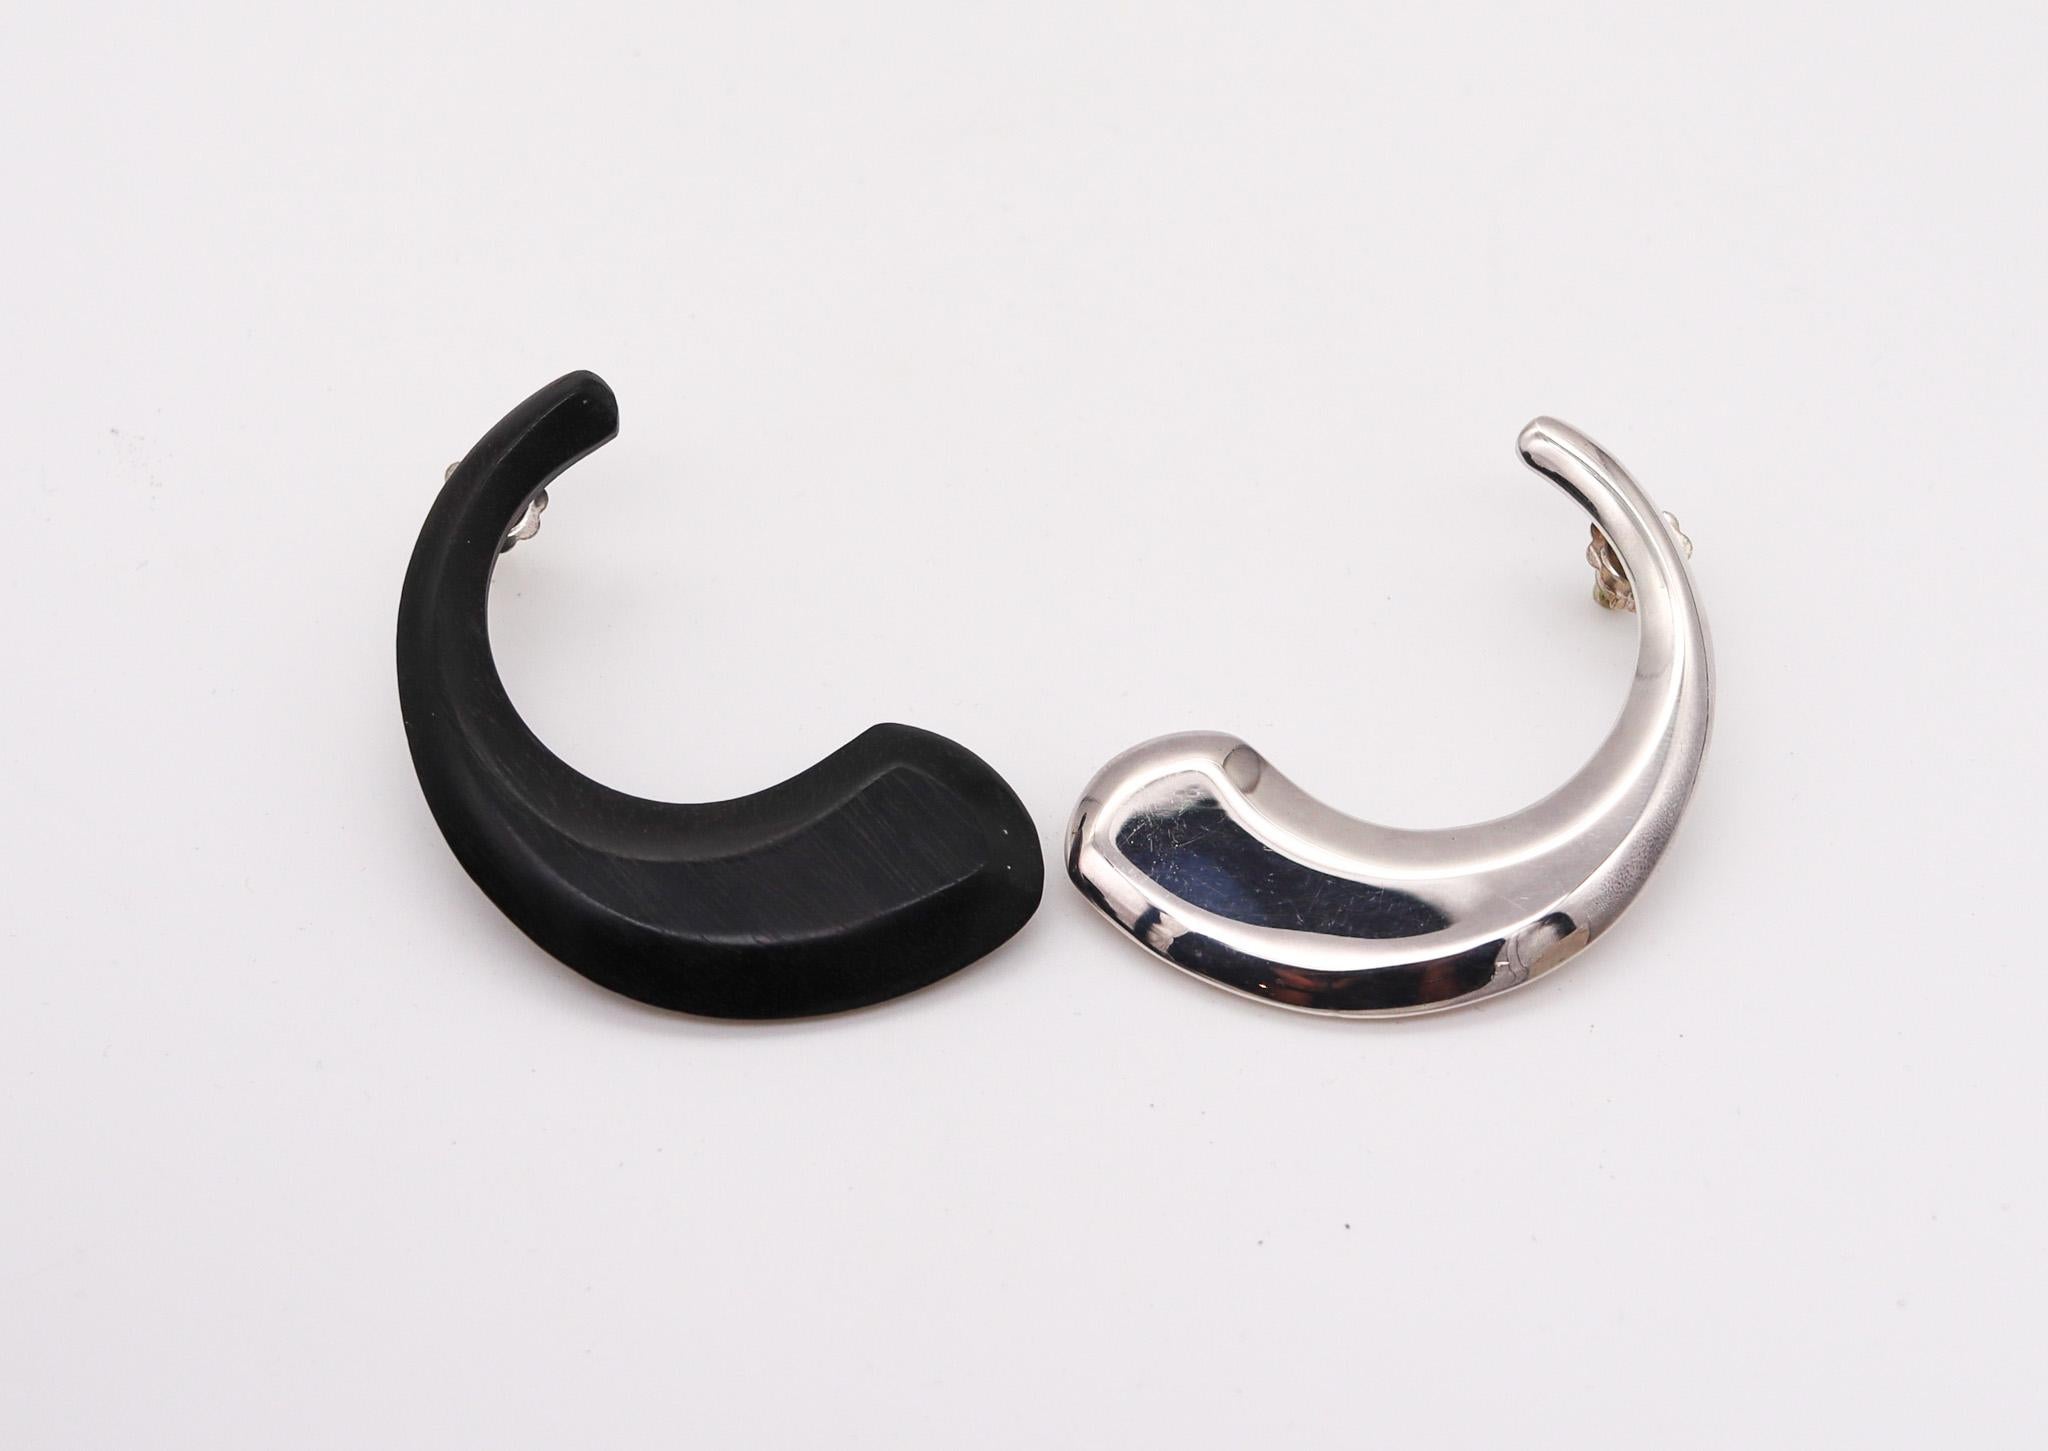 Boucles d'oreilles en argent et bois conçues par Monica Coscioni. 

Magnifique paire de boucles d'oreilles positives et négatives, créées dans la ville d'Orvieto en Italie dans l'atelier de joaillerie de la créatrice Monica Coscioni. Cette pièce